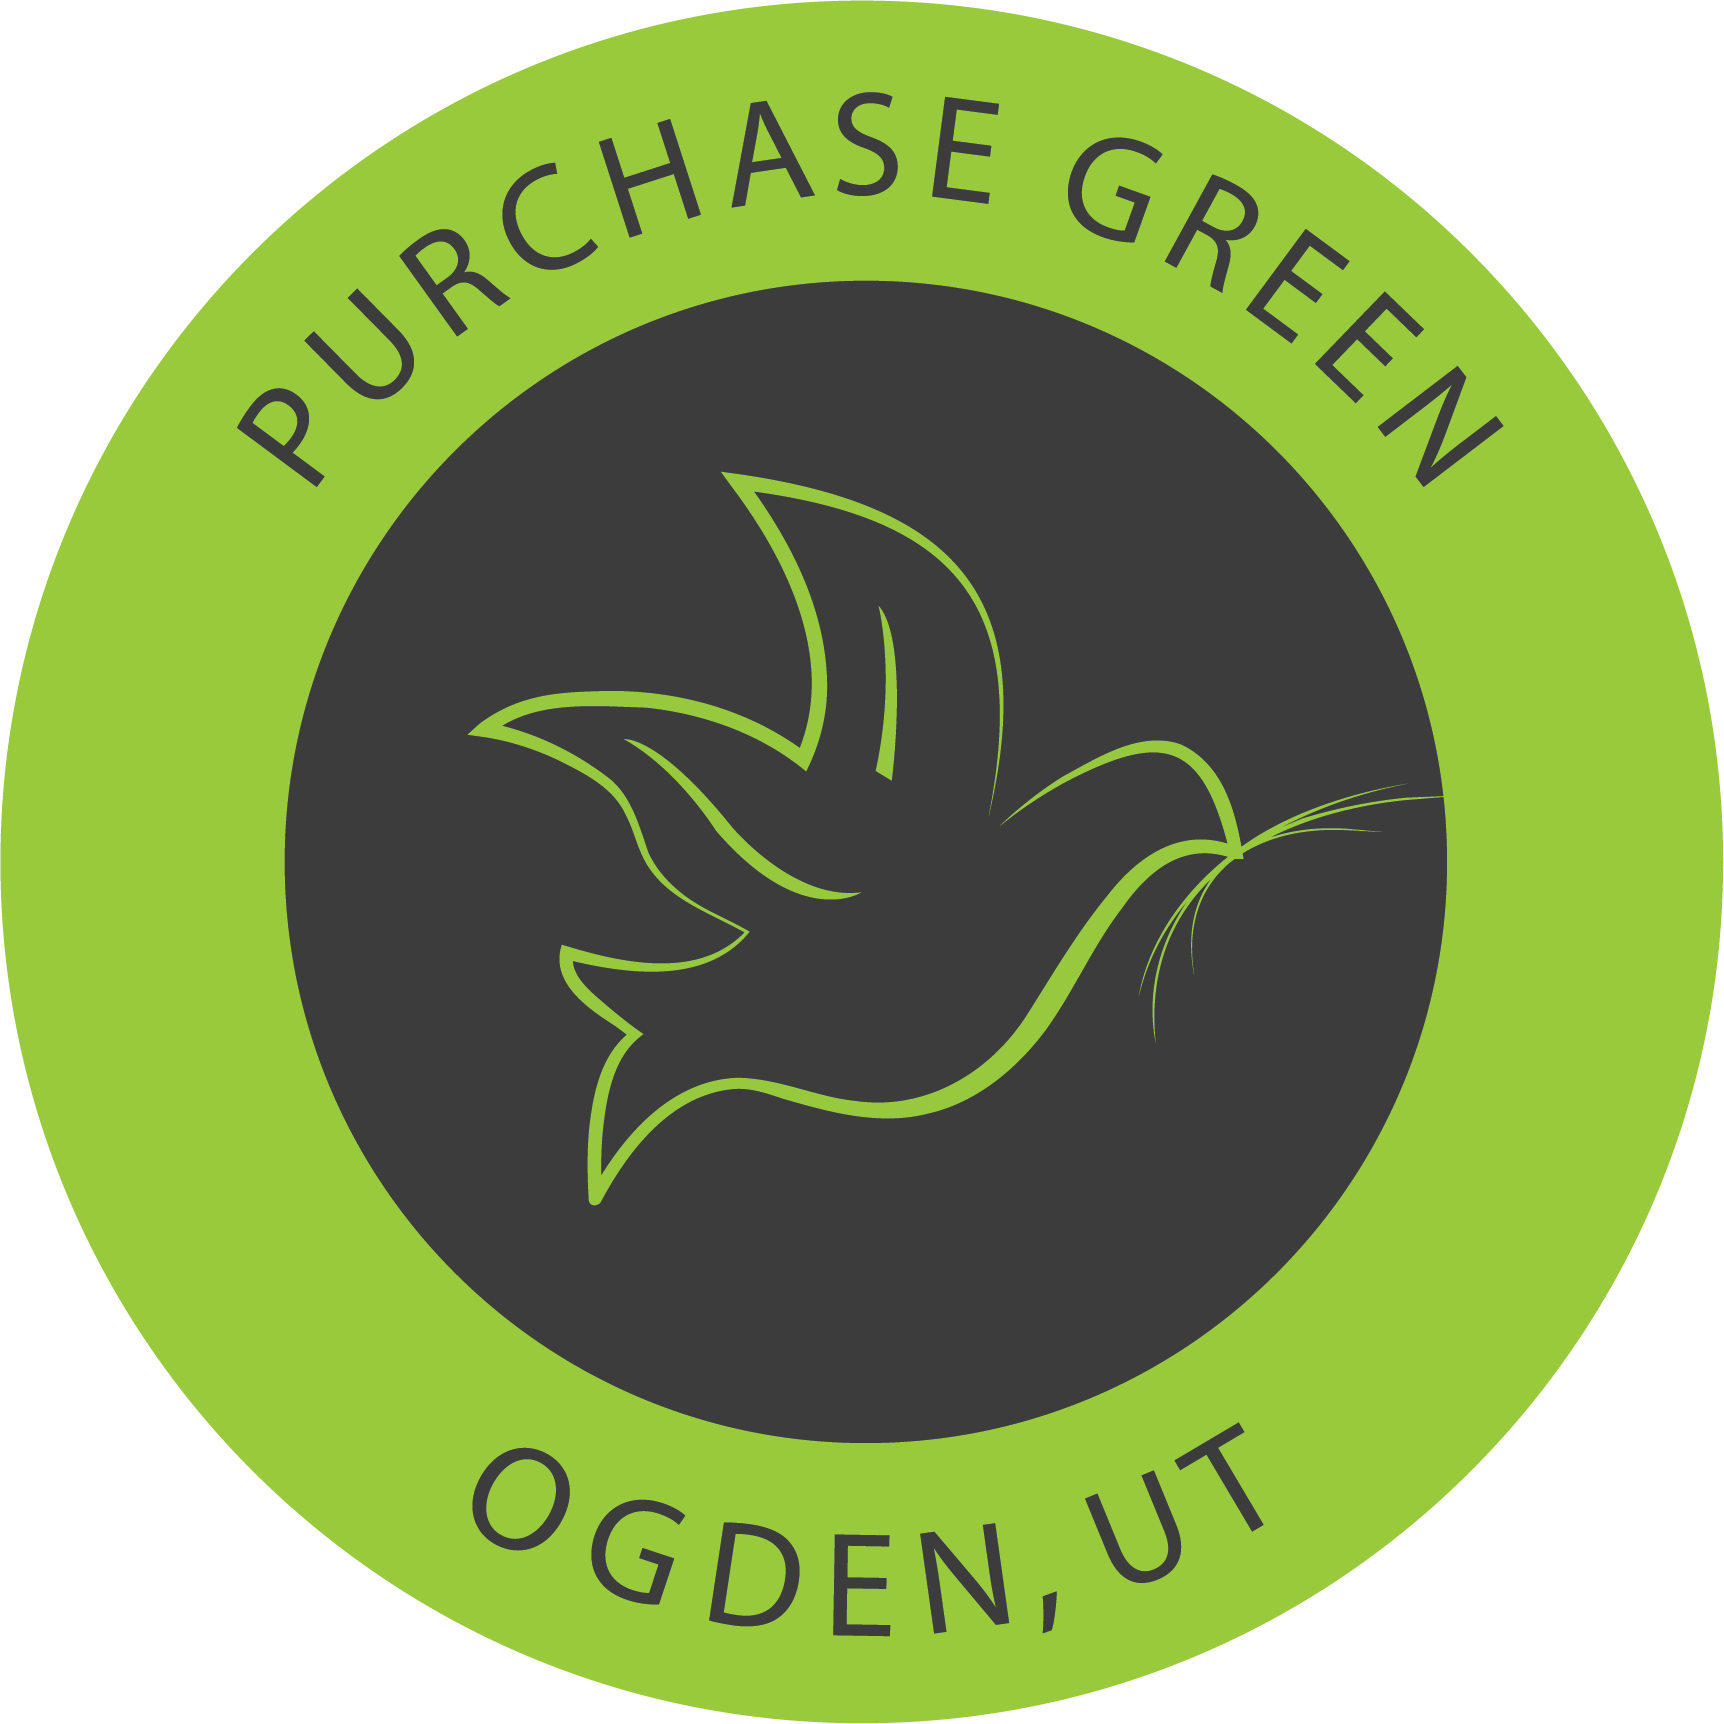 Purchase Green Artificial Grass - Ogden, UT 84404 - (385)333-3147 | ShowMeLocal.com